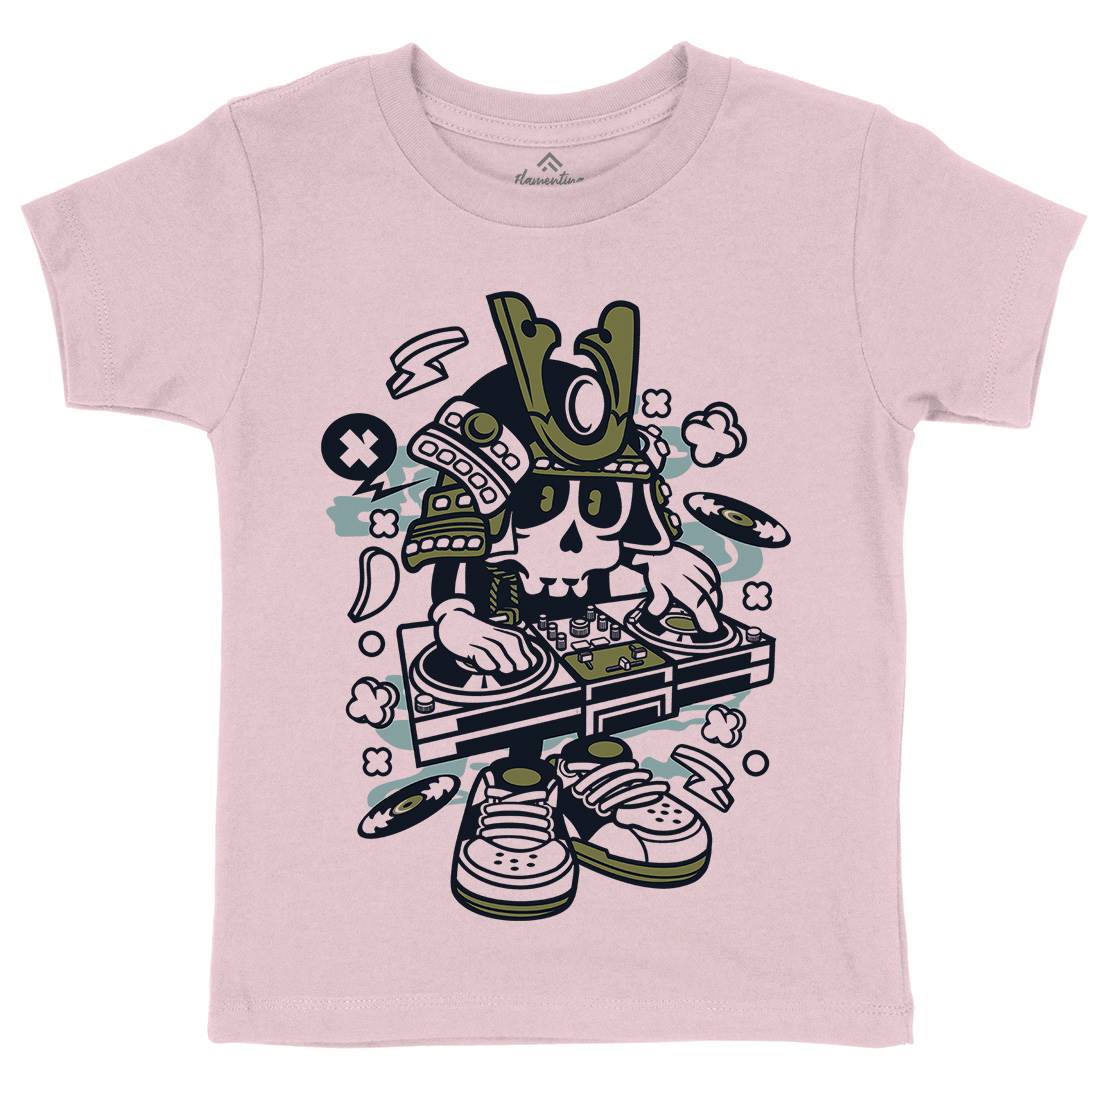 Samurai Dj Kids Organic Crew Neck T-Shirt Music C216